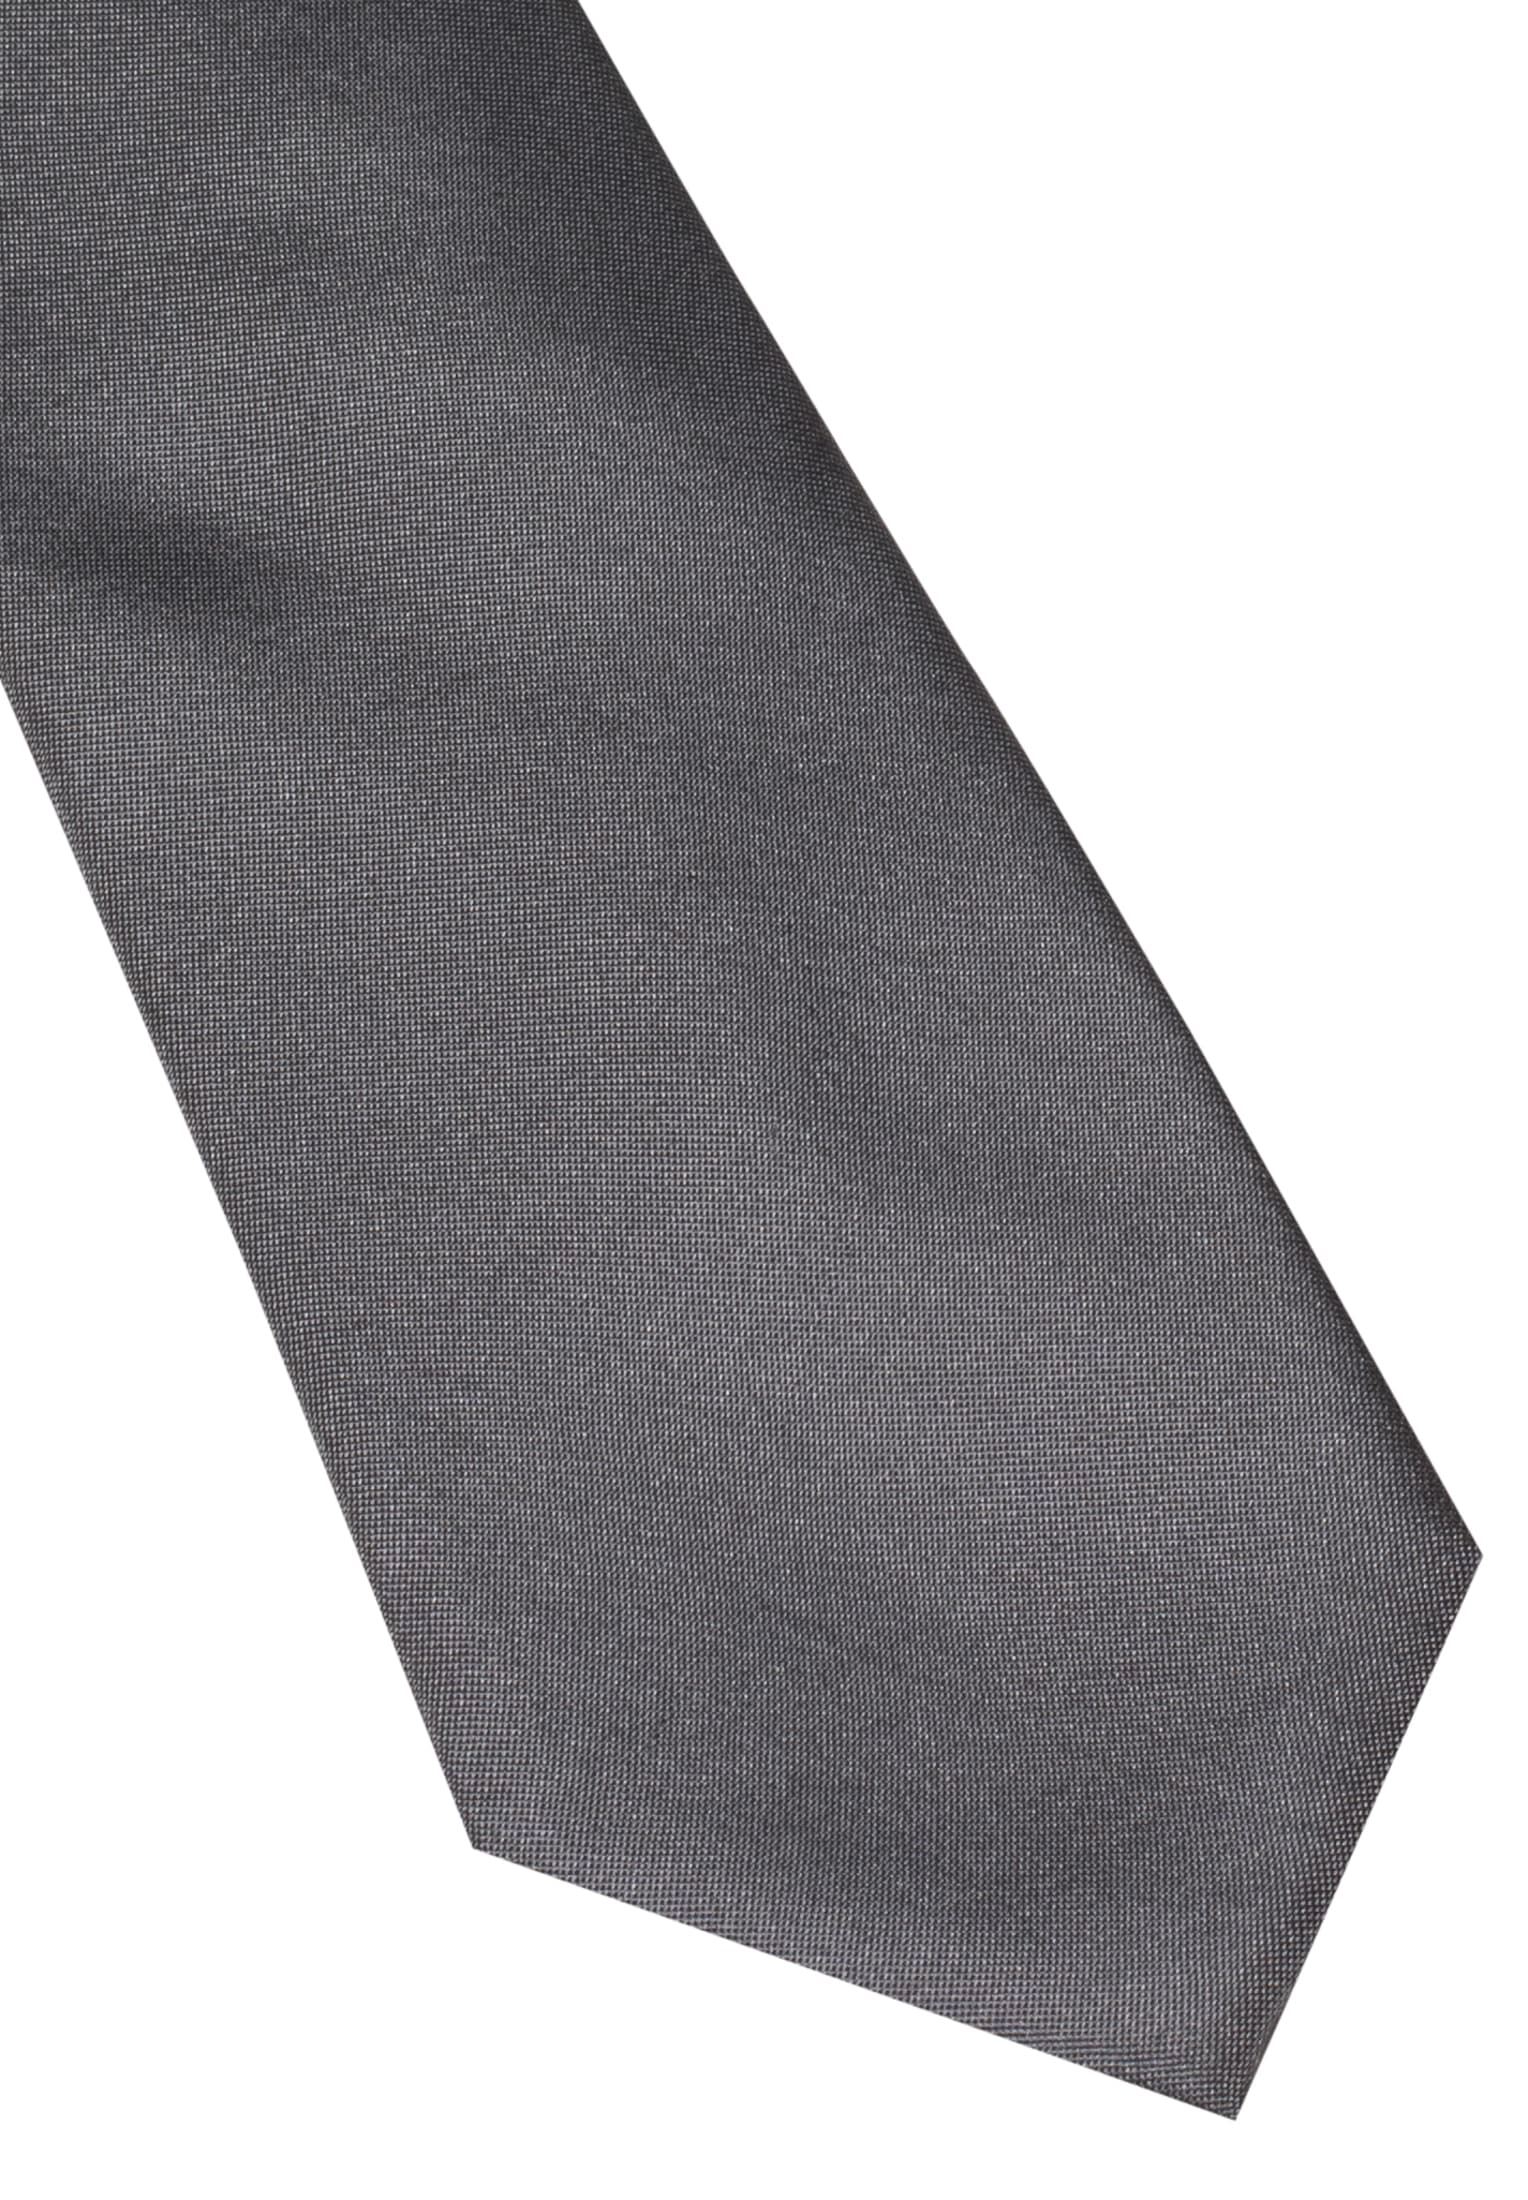 Krawatten online kaufen | Krawatte bei Ackermann und mehr jetzt